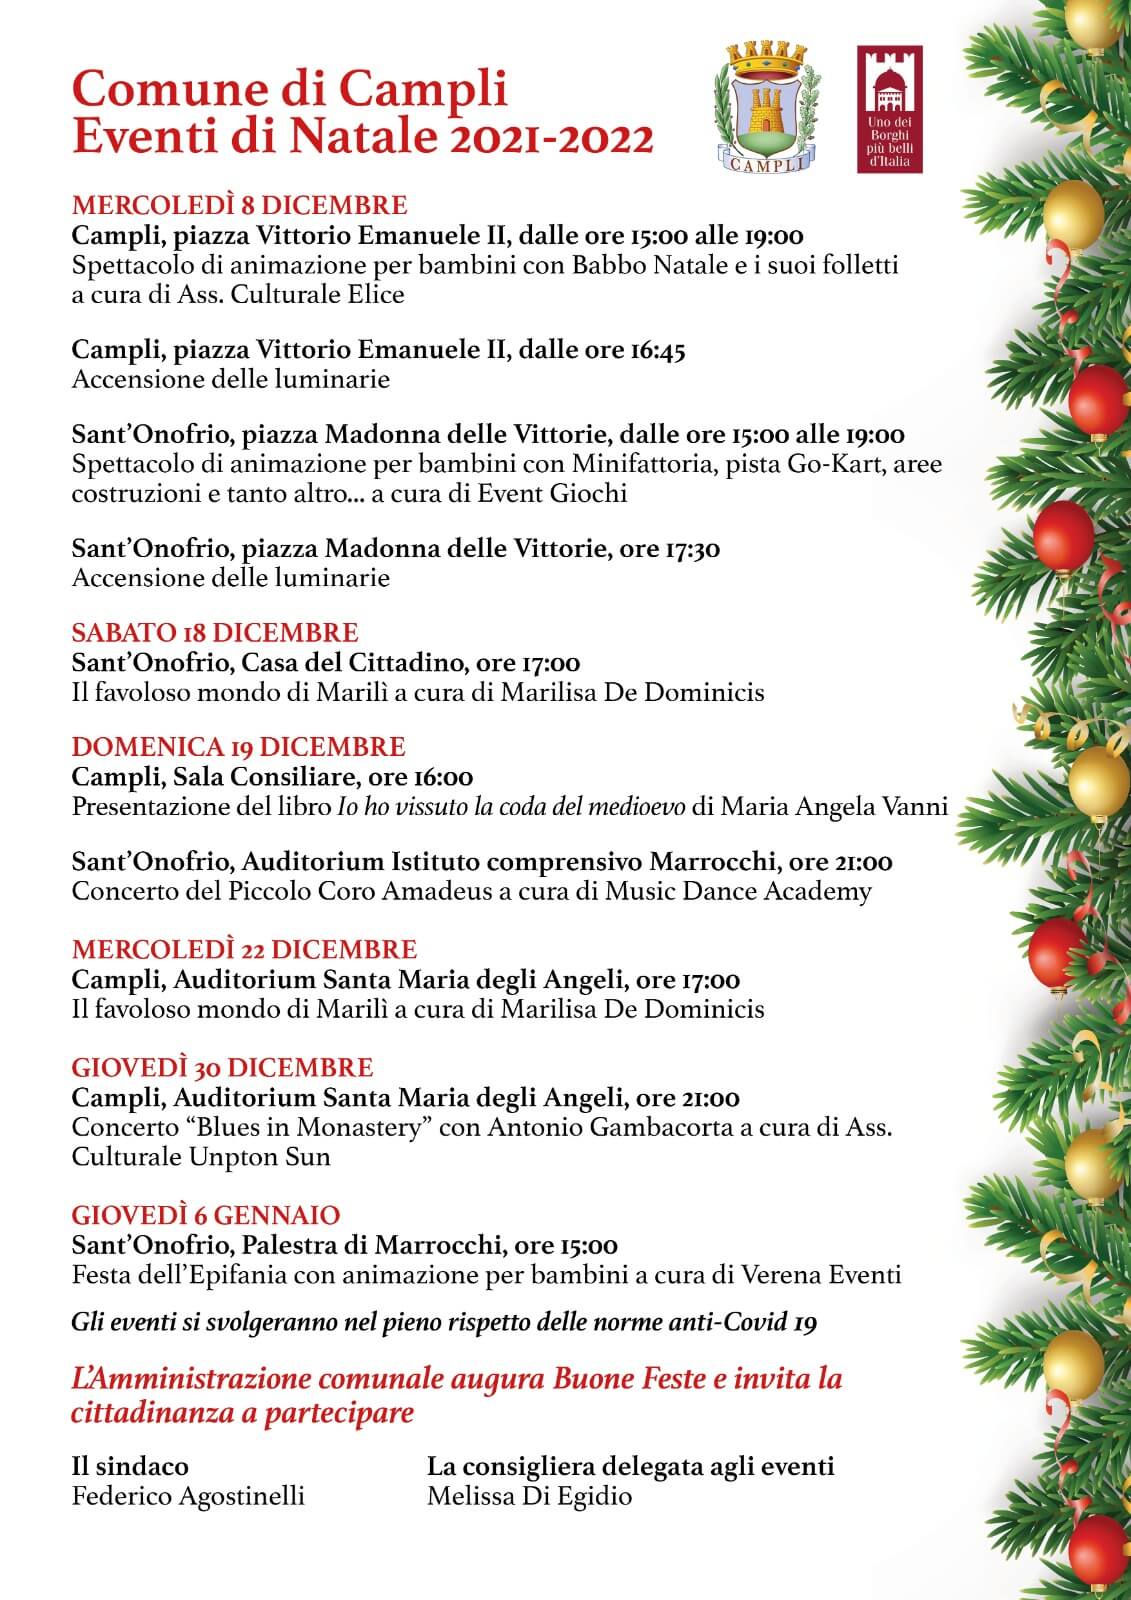 Calendario degli eventi natalizi di Campli, uno dei borghi più belli d’Italia.